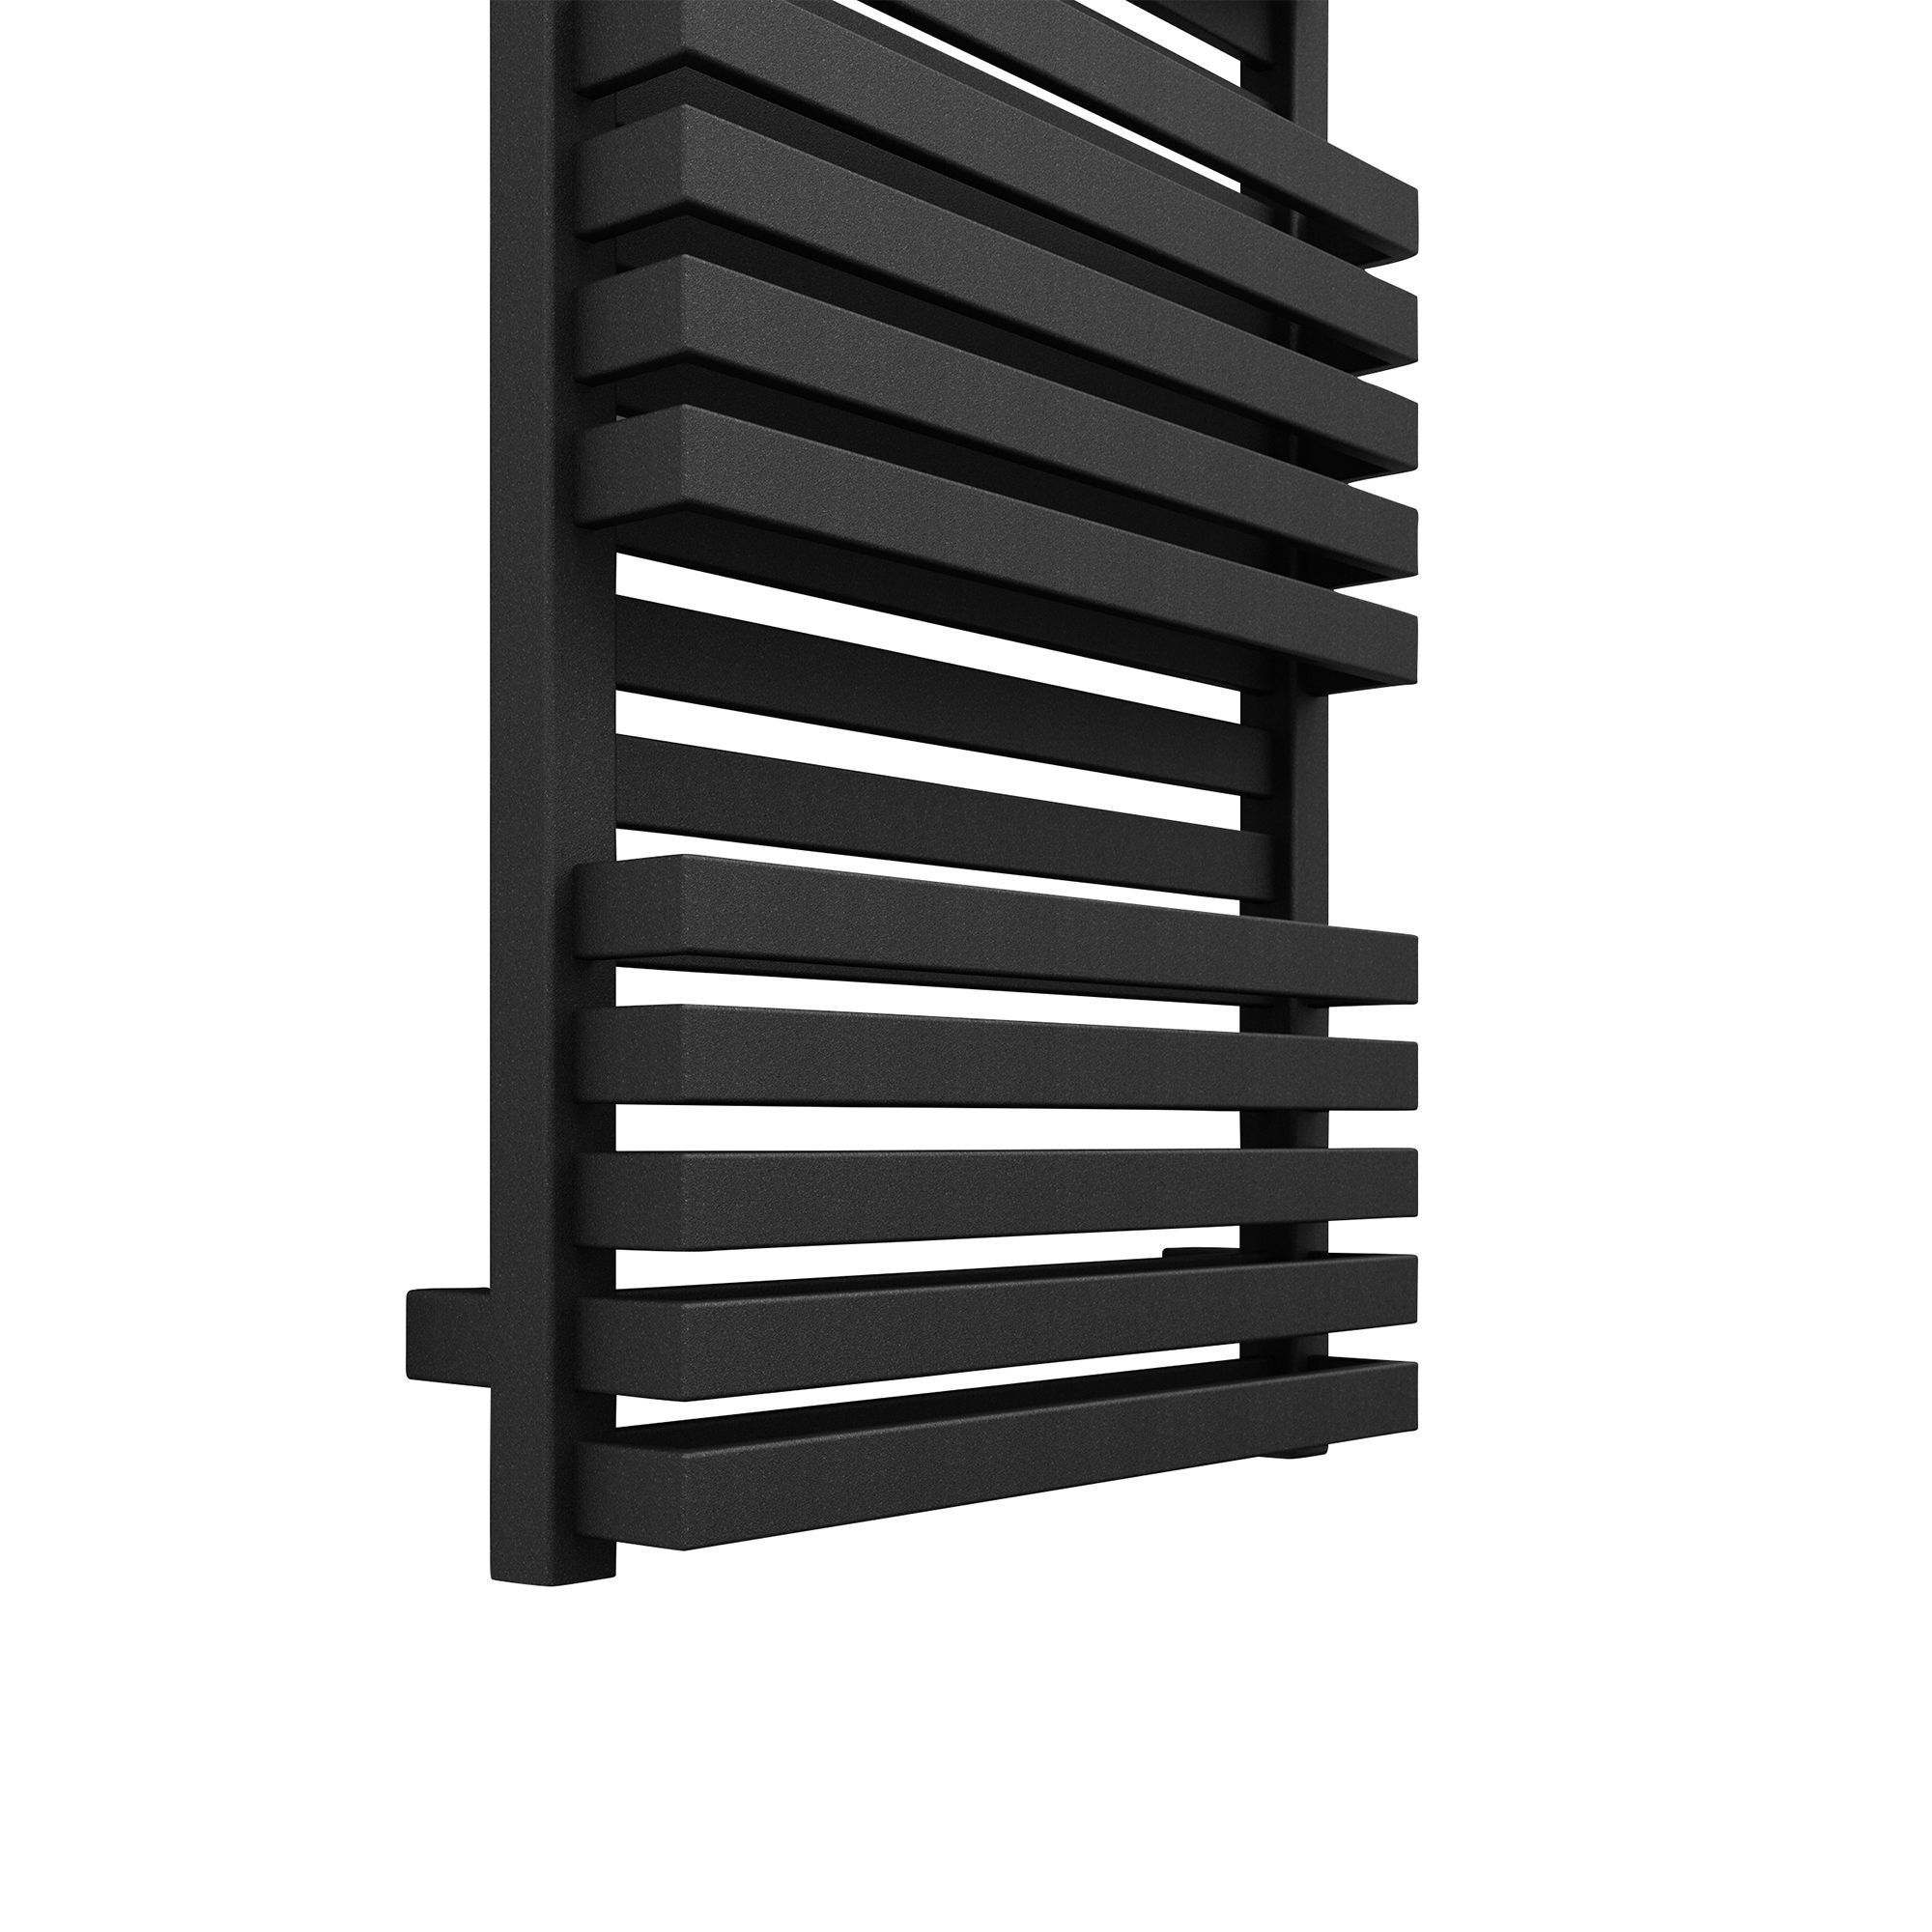 Terma Quadrus Bold Metallic black Towel warmer (W)450mm x (H)1185mm